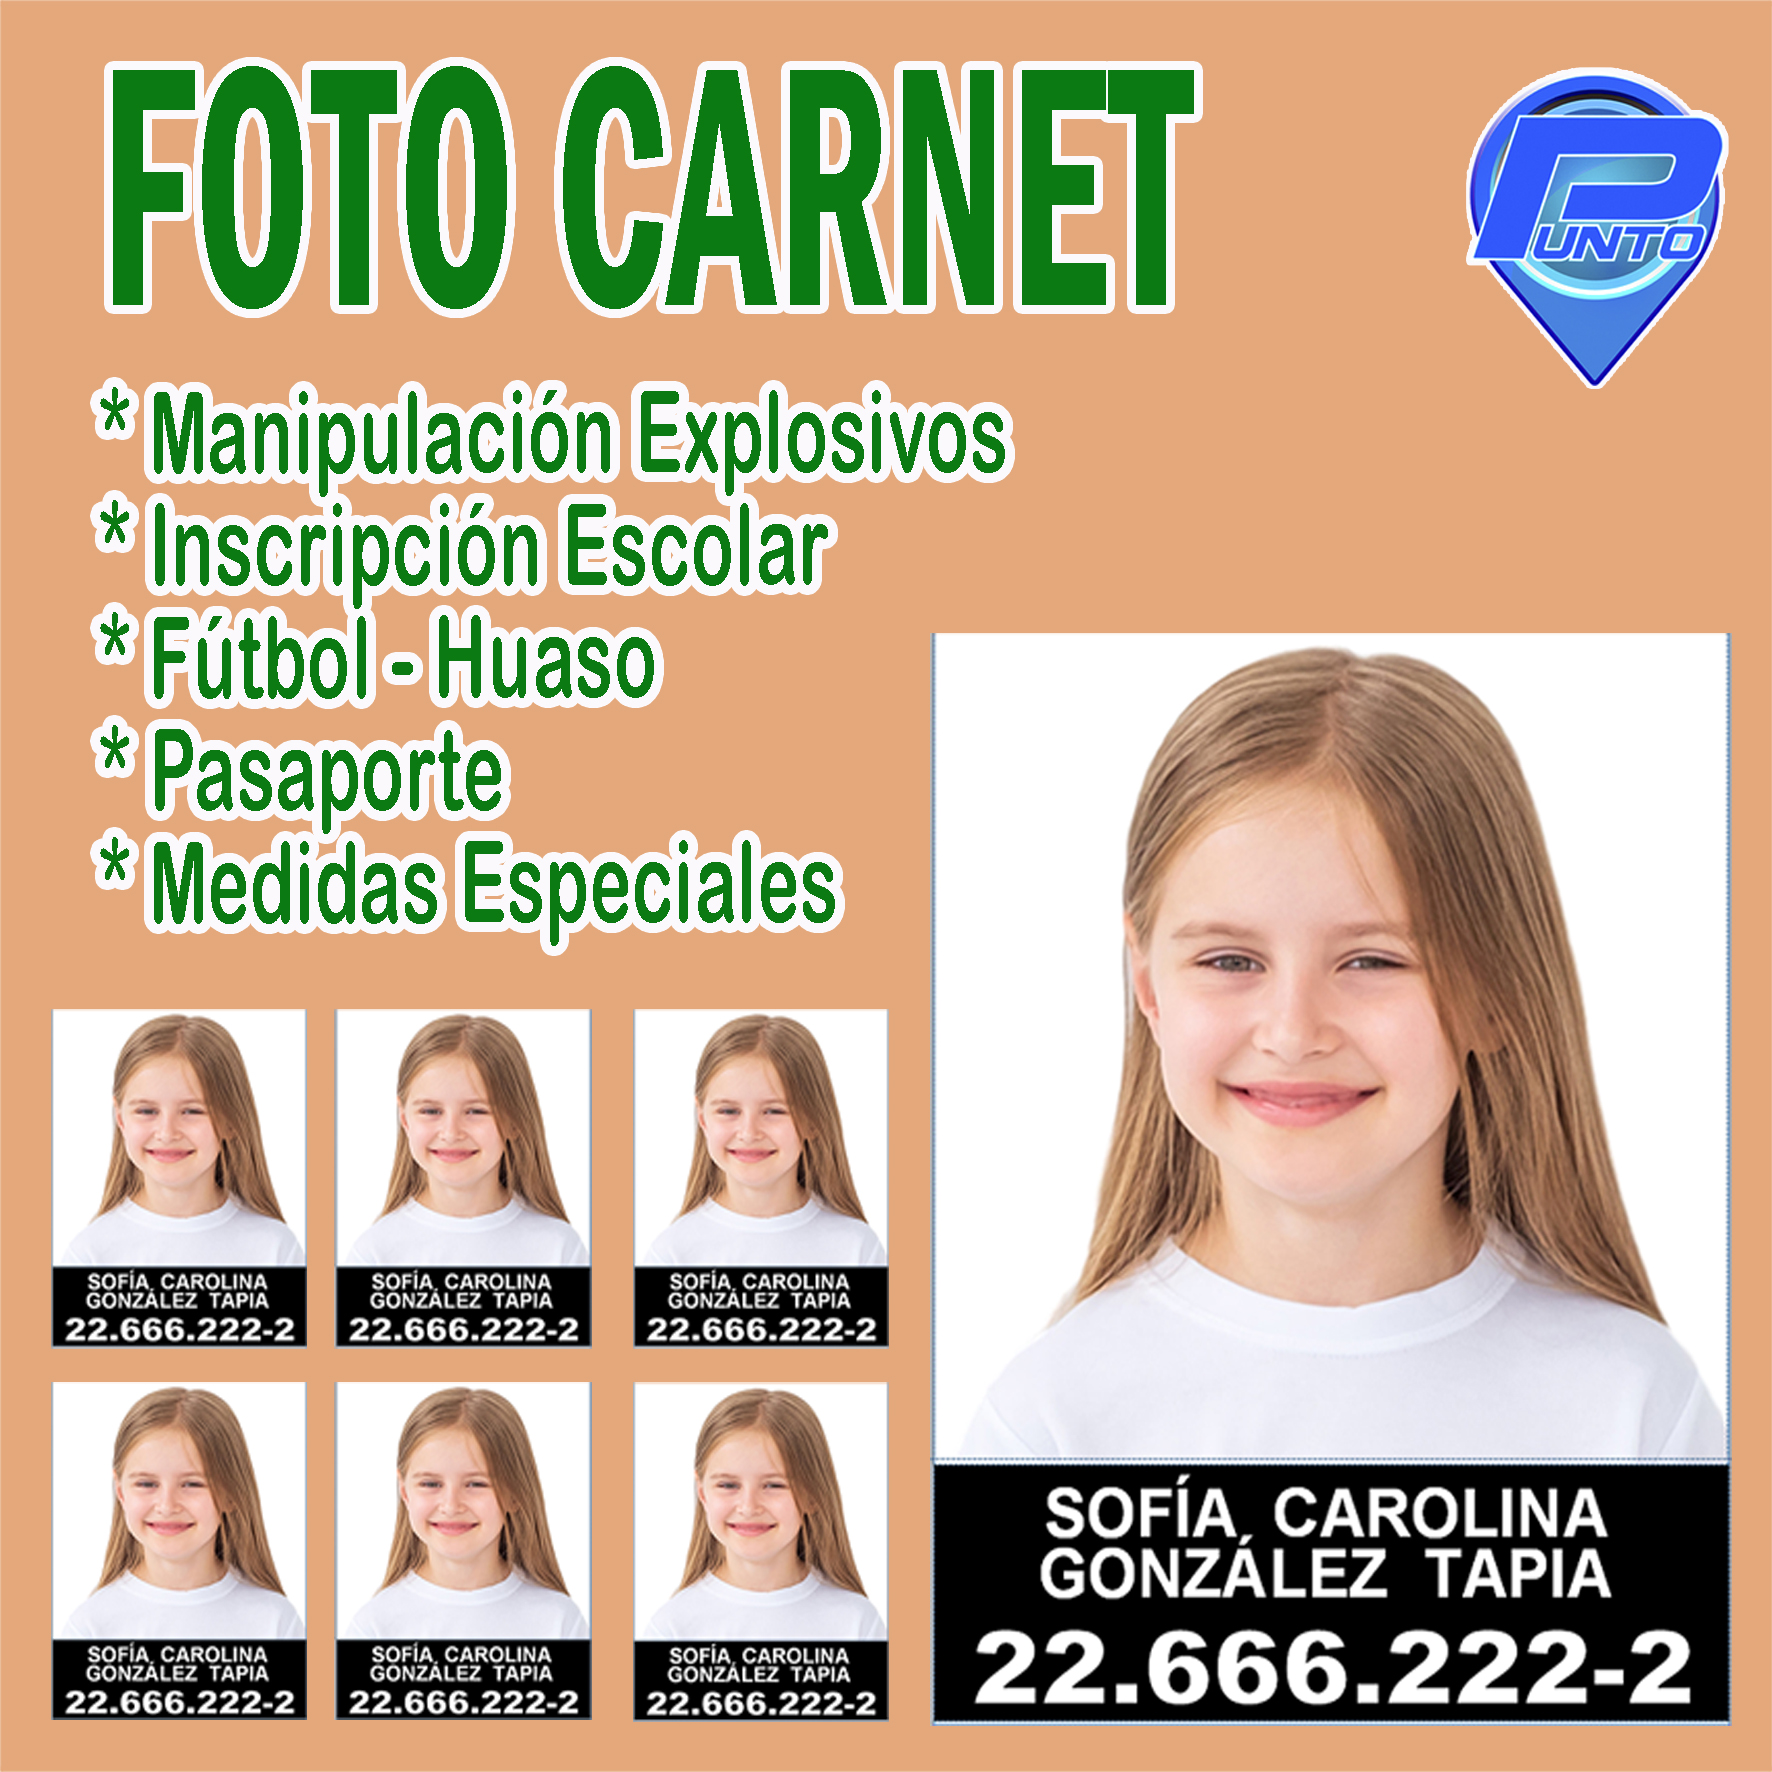 Fotos De Carnet Medidas Foto Carnet – Bienvenidos a Punto Servicios – Tu Solución